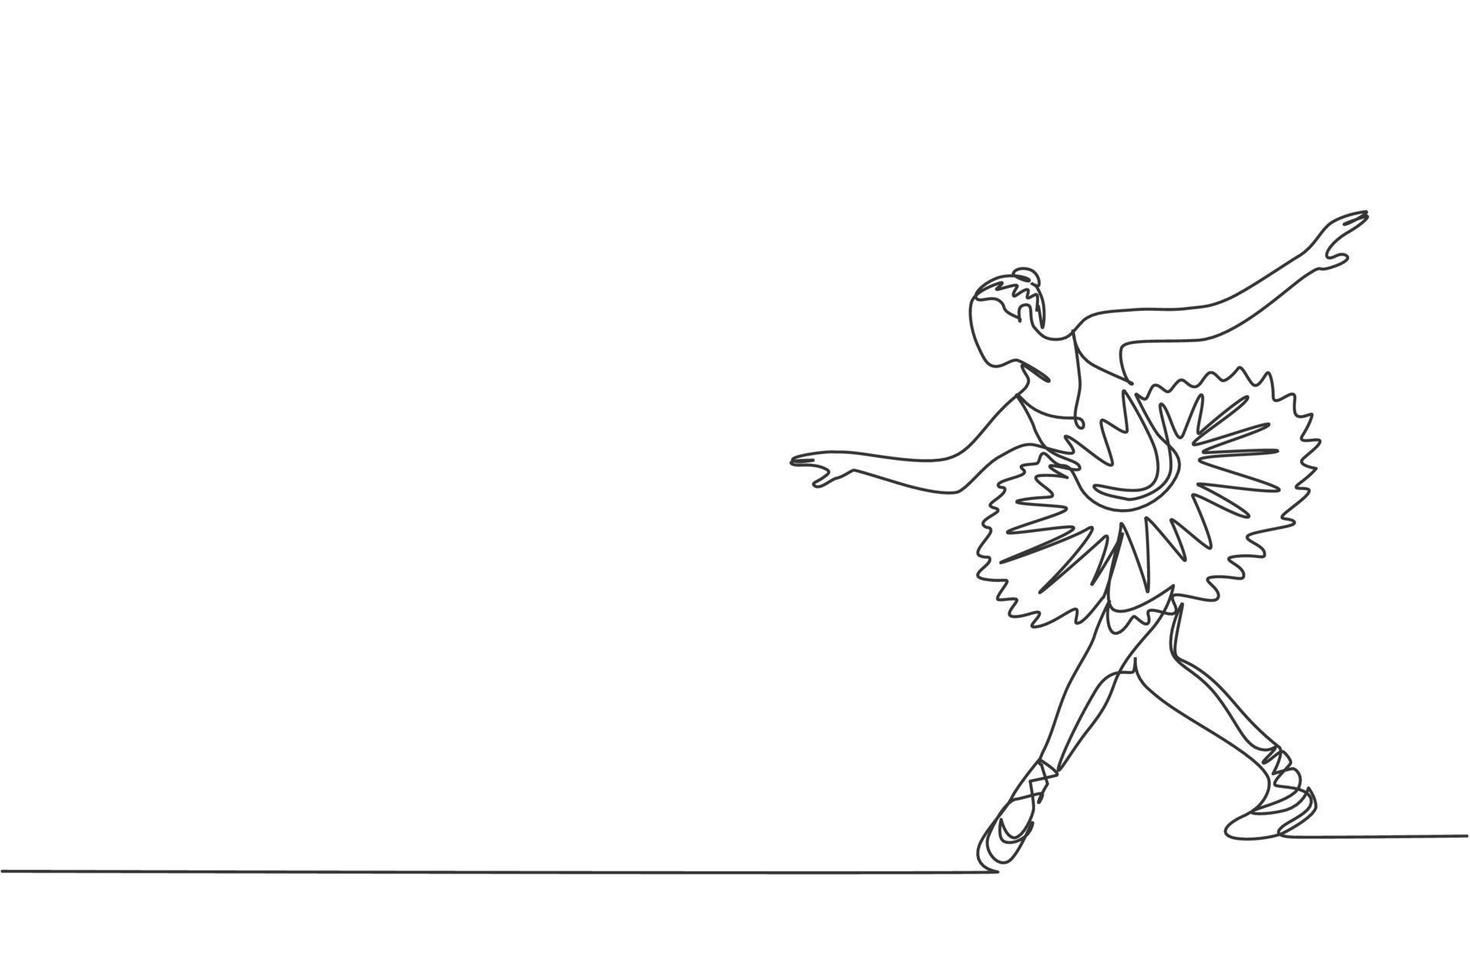 enda kontinuerlig linje ritning av unga graciösa vackra ballerina visade klassisk balett koreografi dans skicklighet. operadans koncept. trendig enradig design grafisk vektorillustration vektor